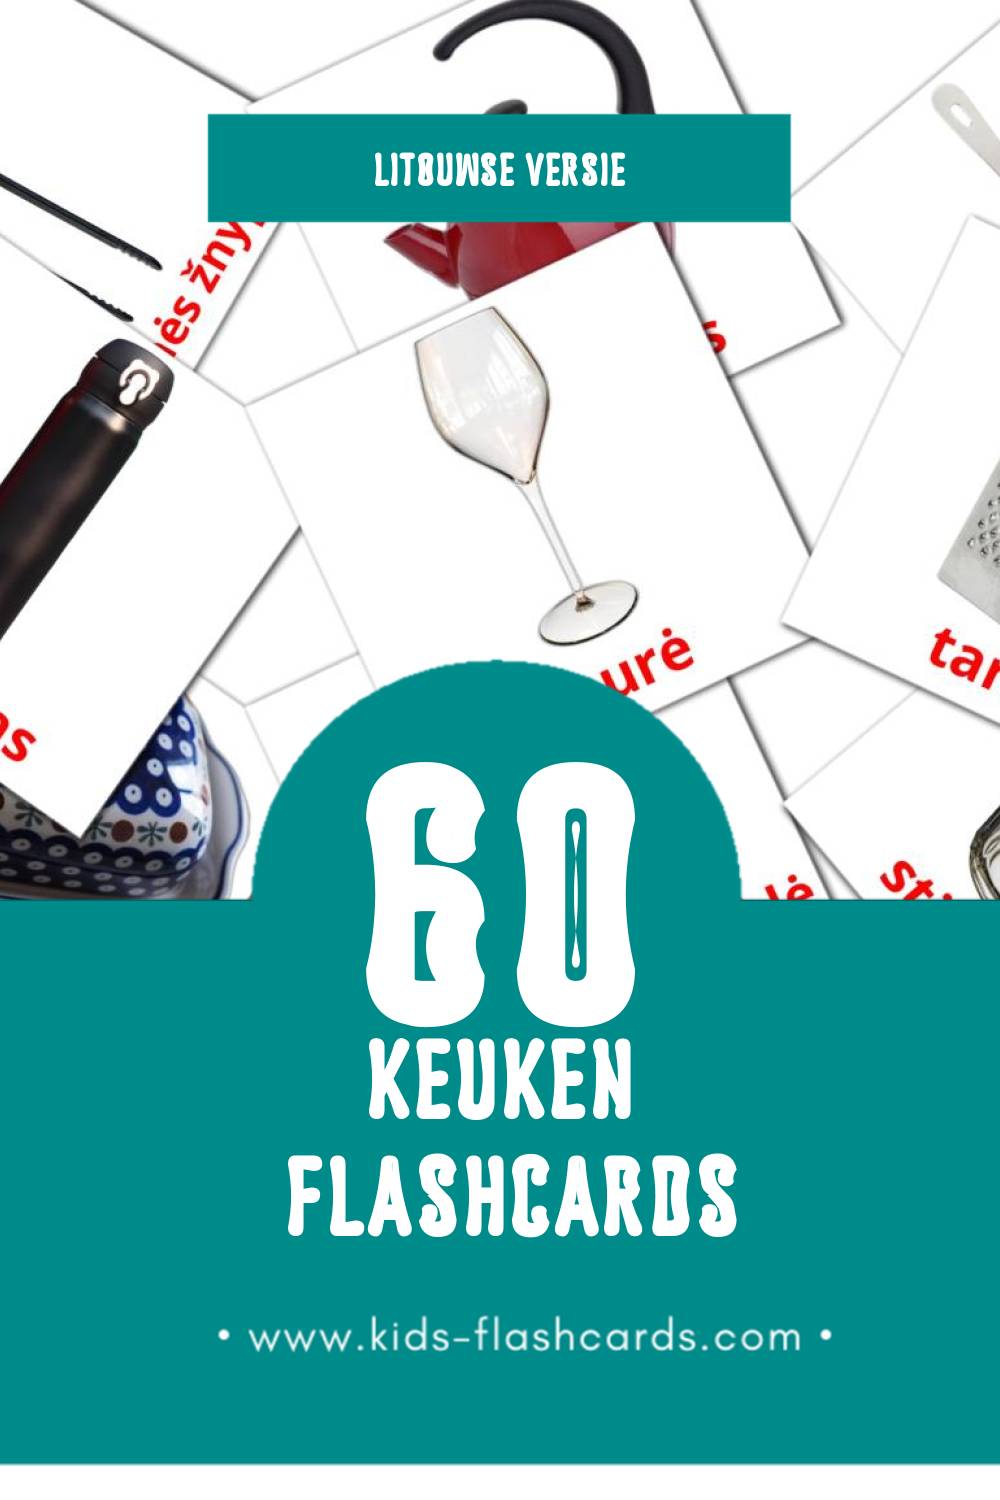 Visuele Virtuvė Flashcards voor Kleuters (60 kaarten in het Litouws)